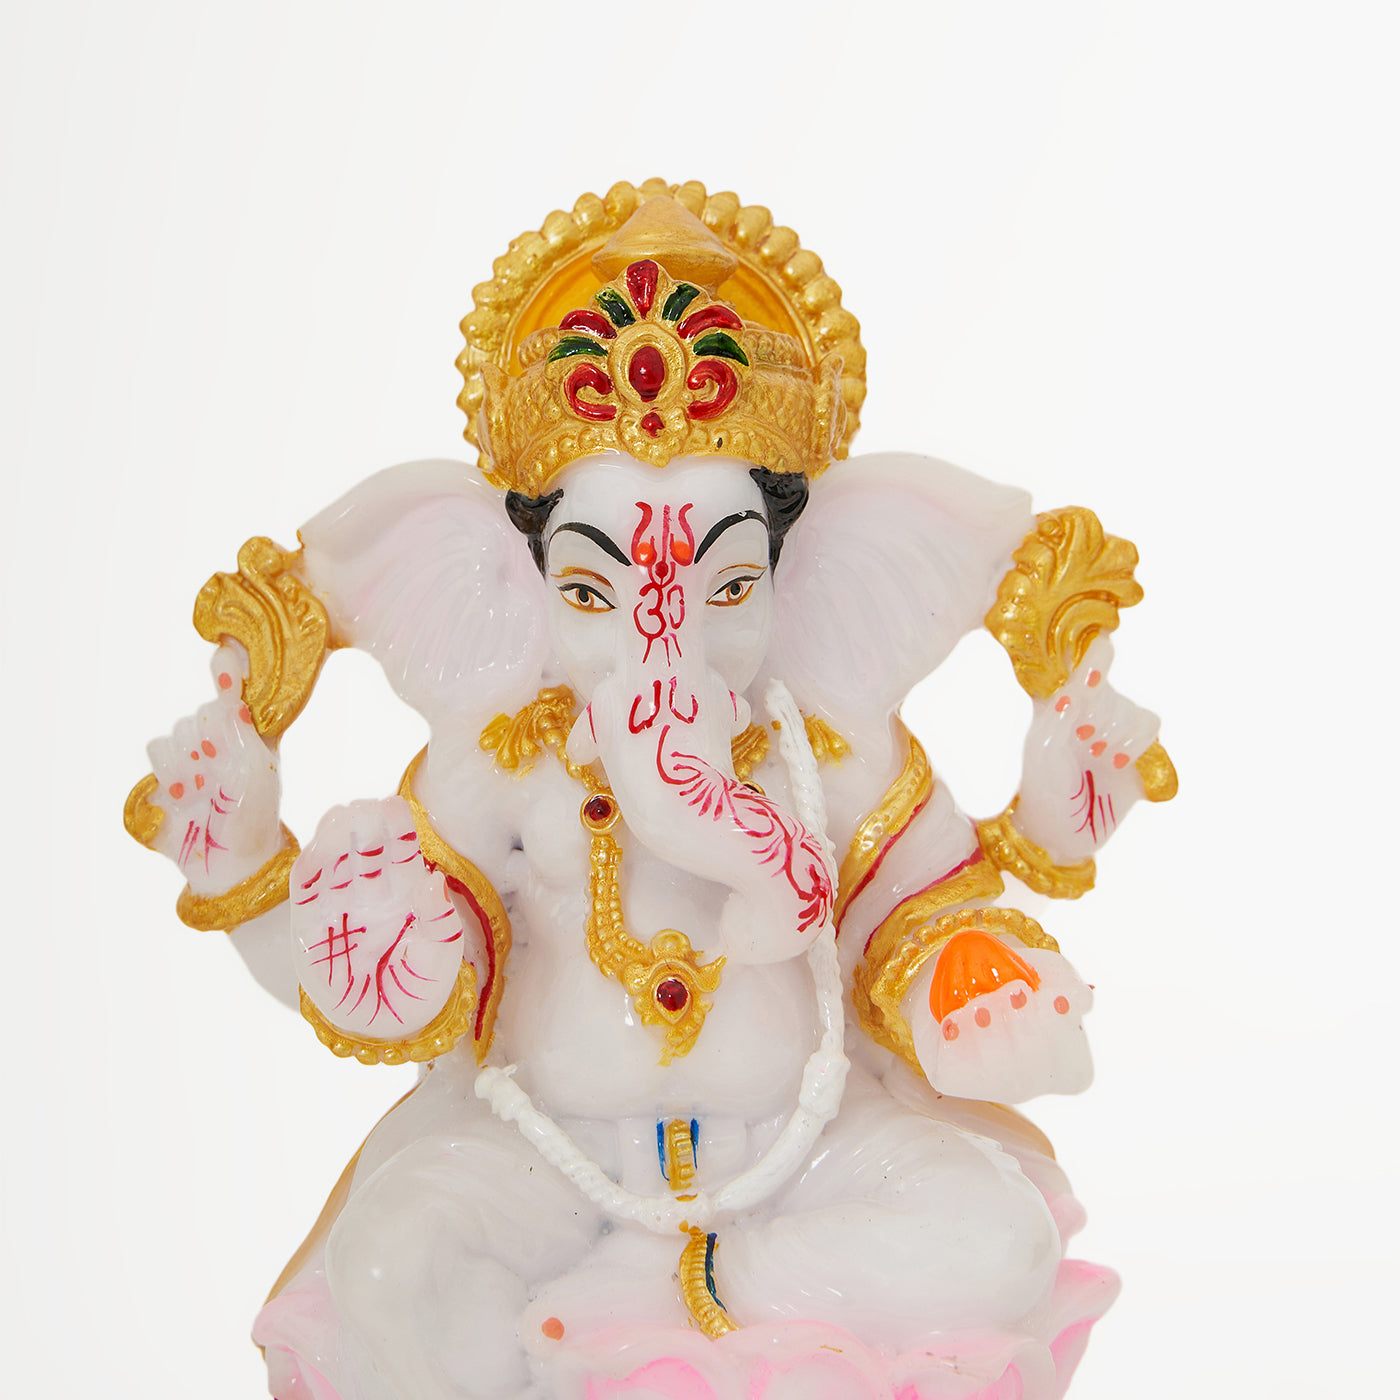 Lord Ganesha | Ganpati | Vinayak Idol In Marble Dust Handpainted Multi Color